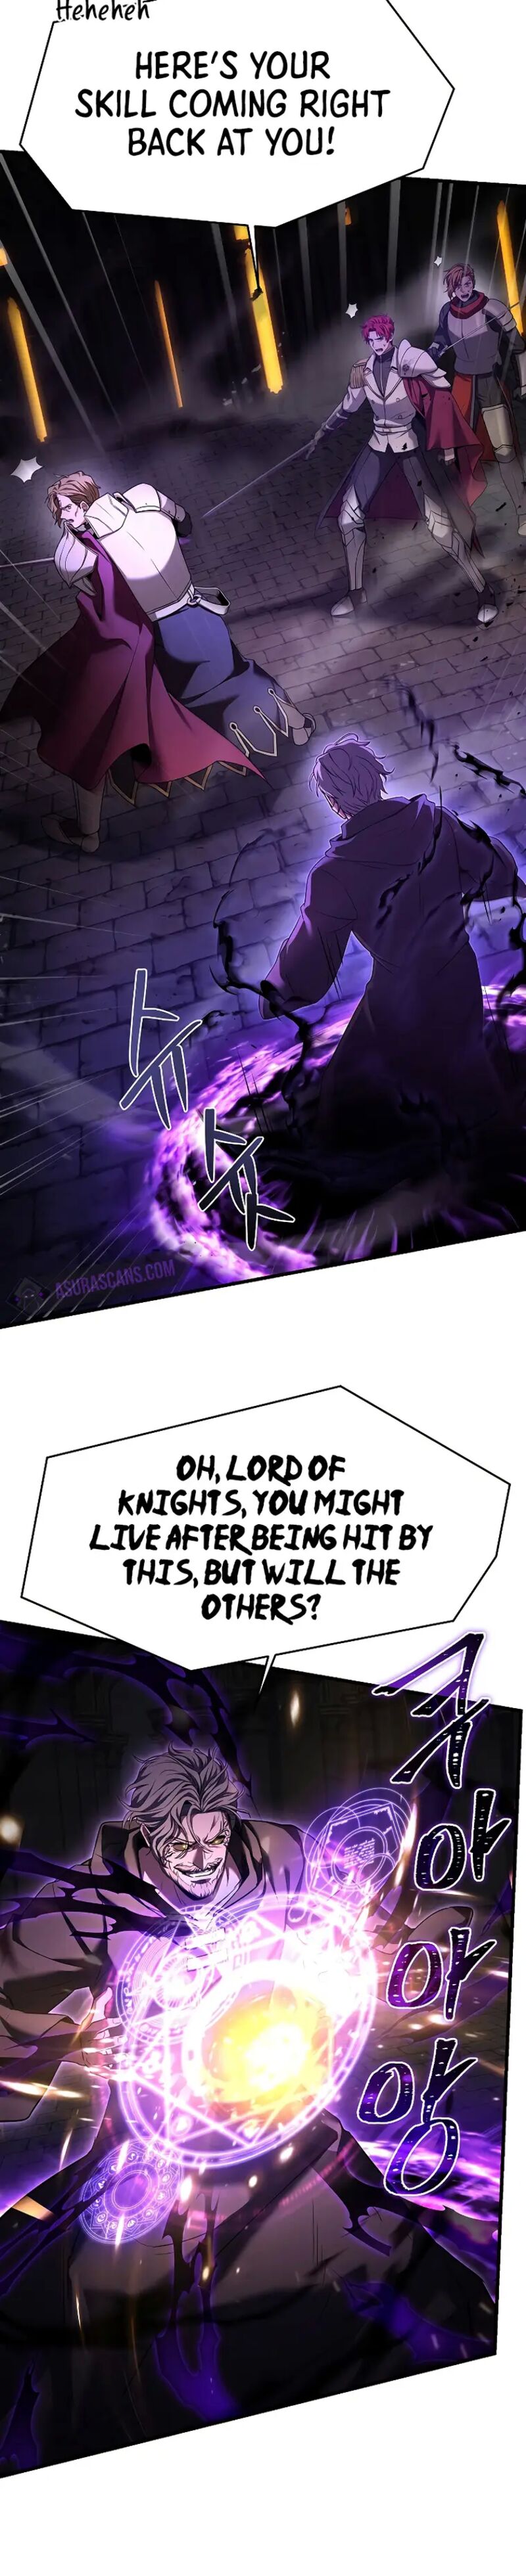 Return Of The Legendary Spear Knight 106 27